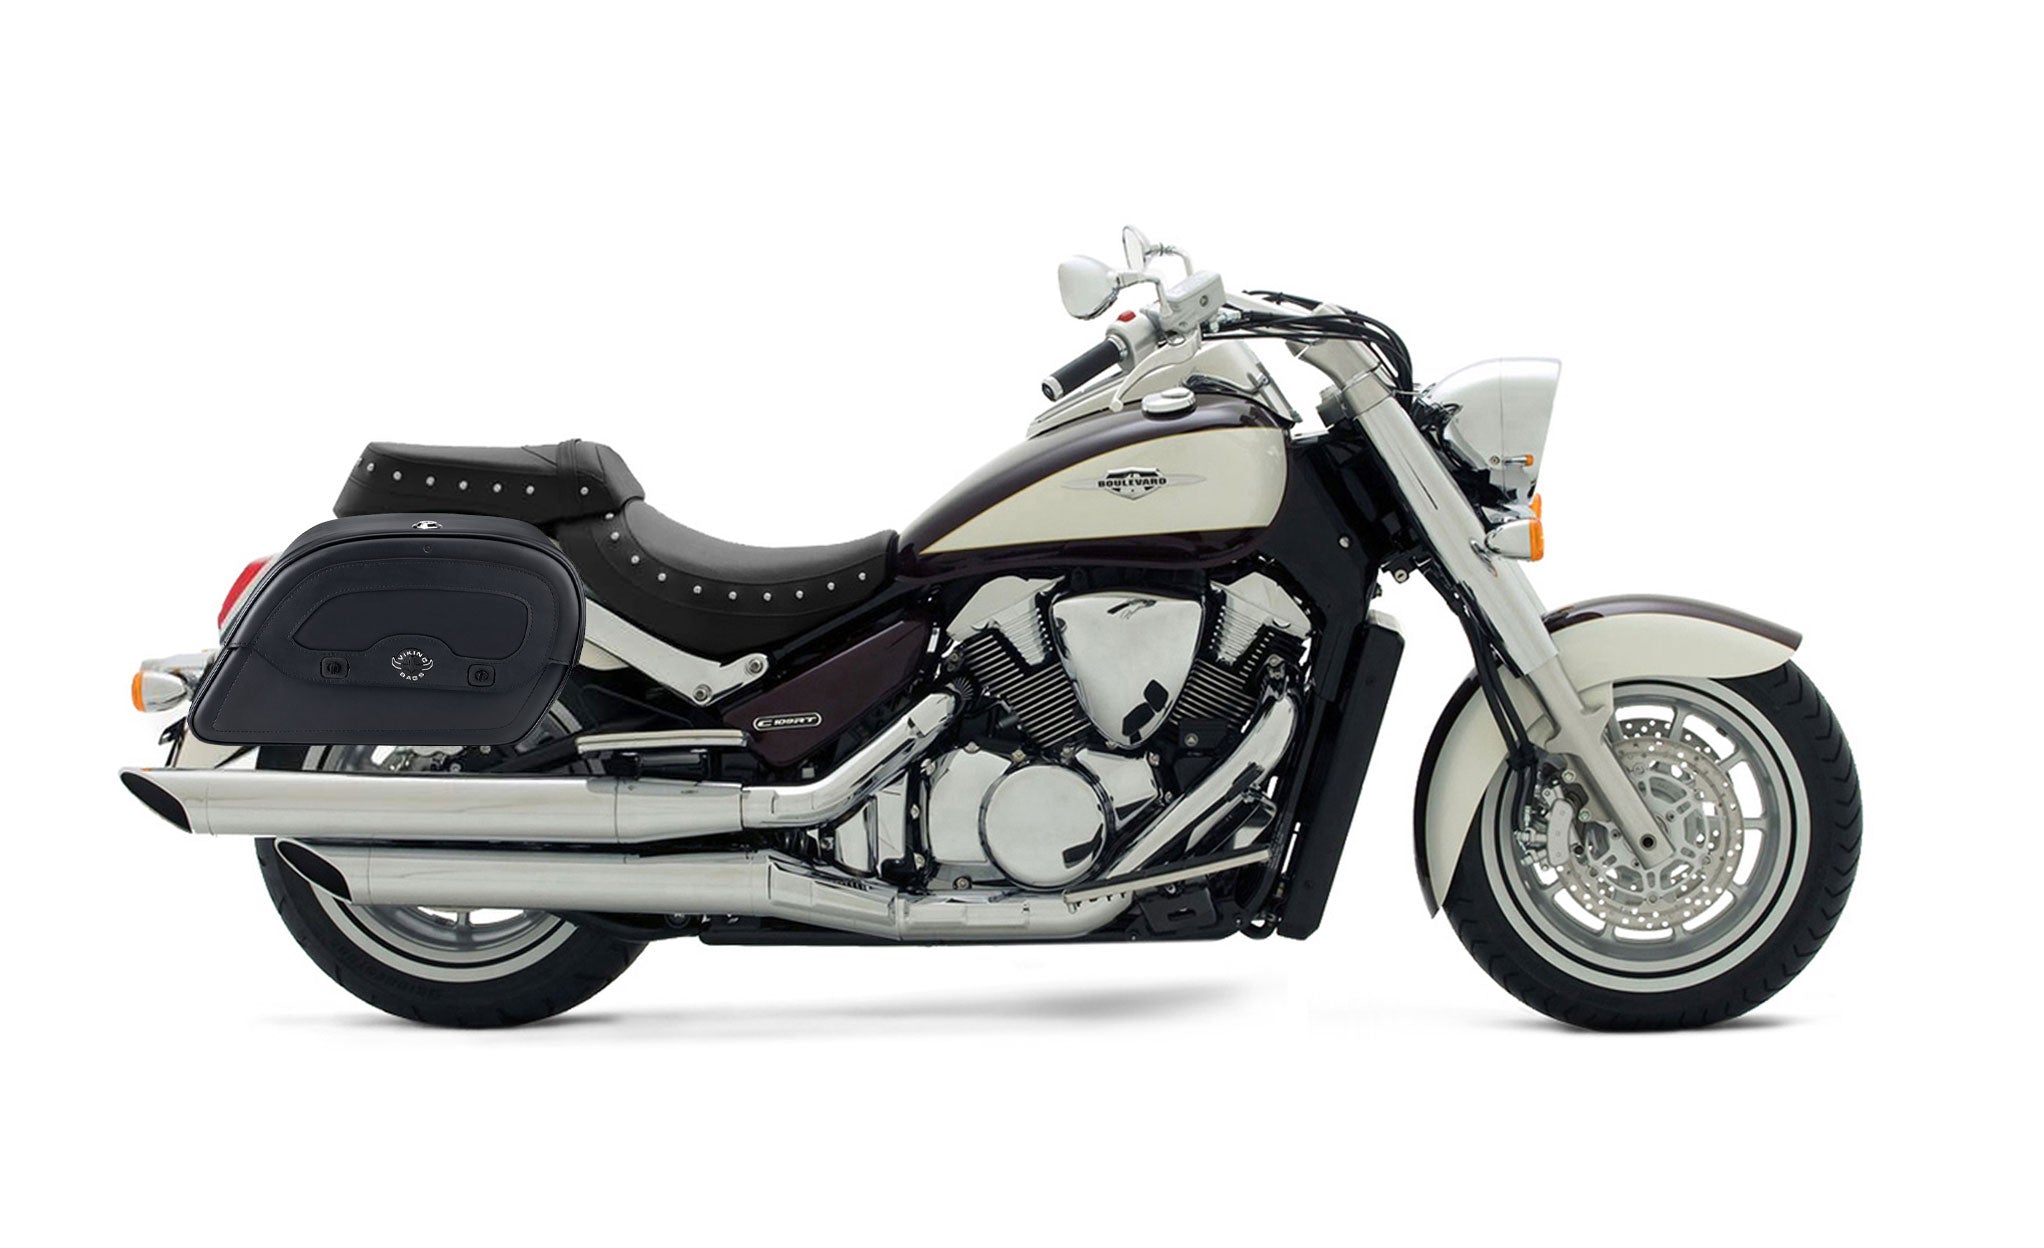 Viking Warrior Large Suzuki Boulevard C109 Leather Motorcycle Saddlebags on Bike Photo @expand